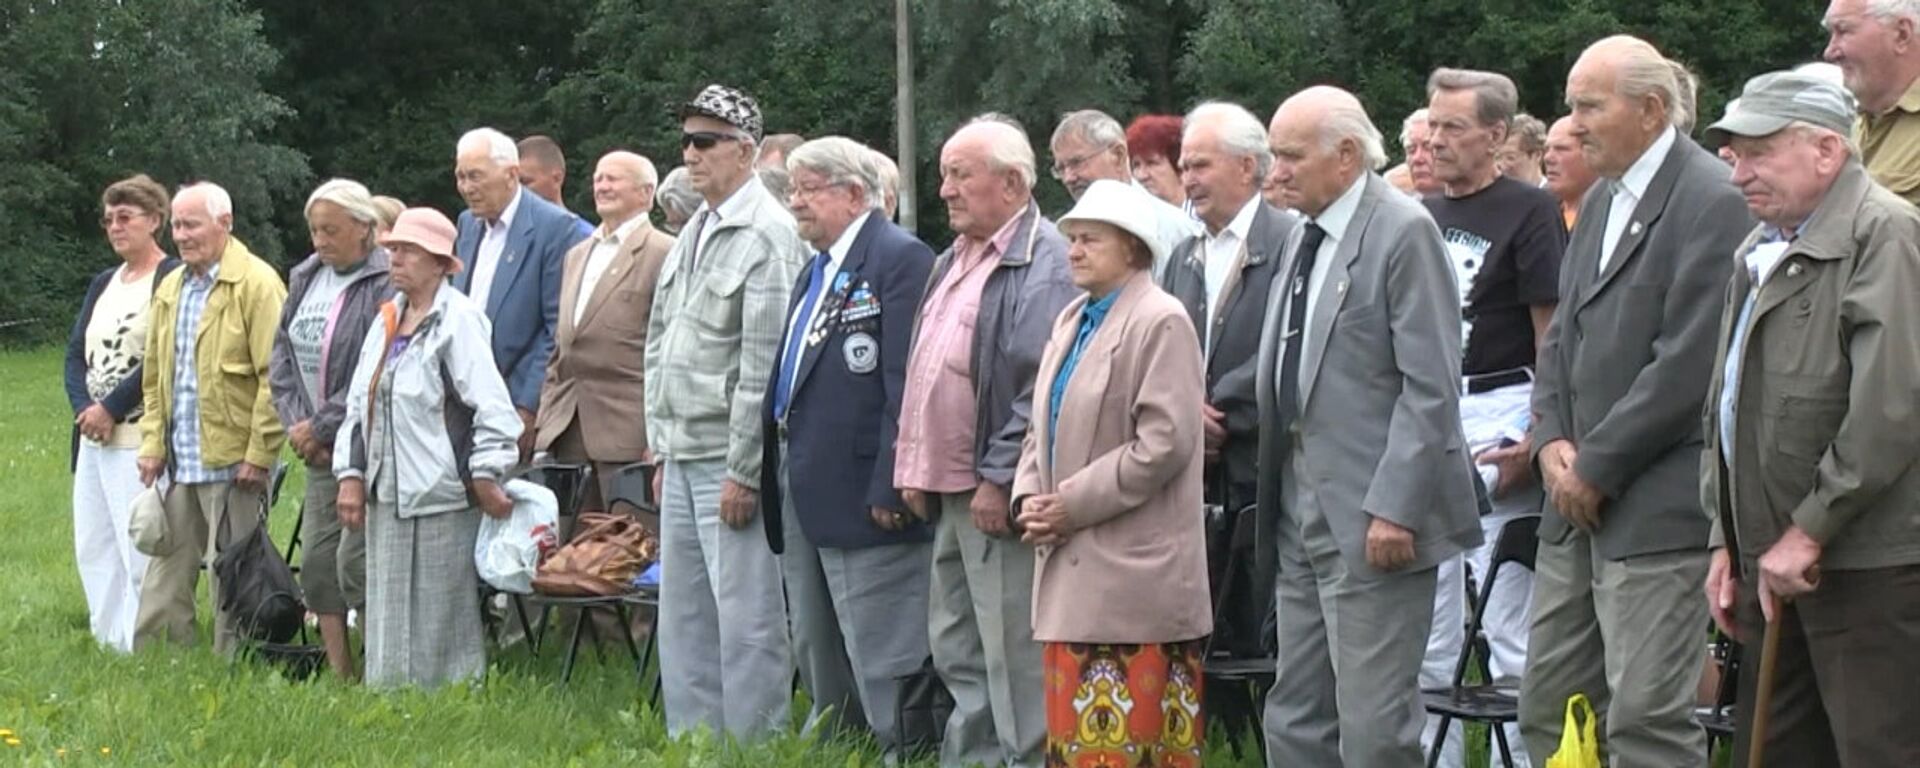 Сбор ветеранов эстонской 20-й дивизии СС в Синимяэ - Sputnik Латвия, 1920, 31.07.2016